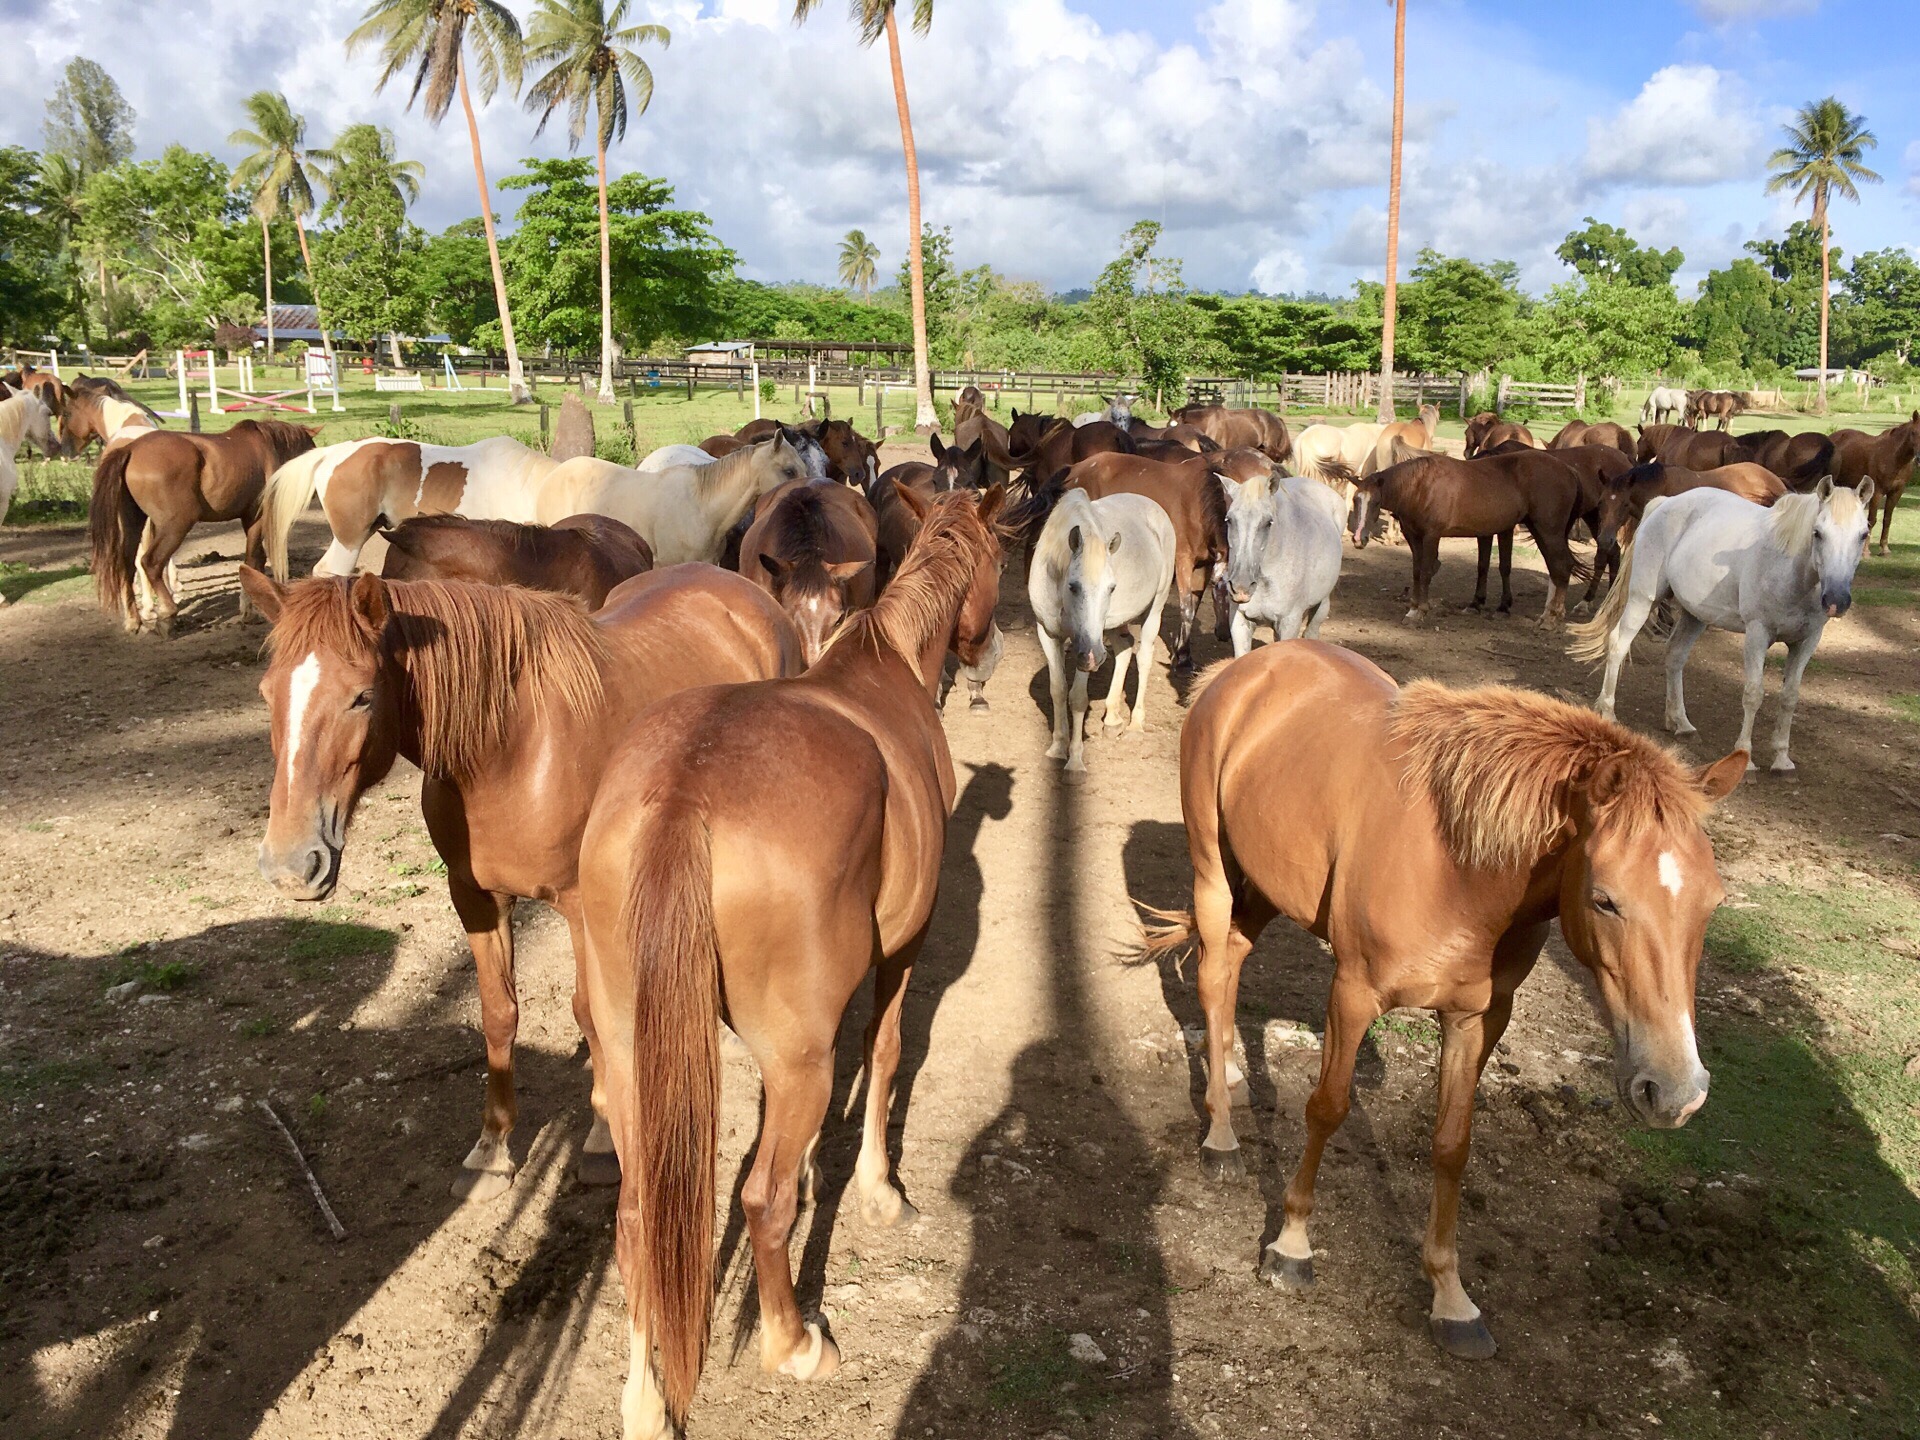 在瓦努阿图，除了水上活动外，可以选择策骑穿过绿油油的田野，民居，奔向清澈无污的海滩，尝试水中骑马和上